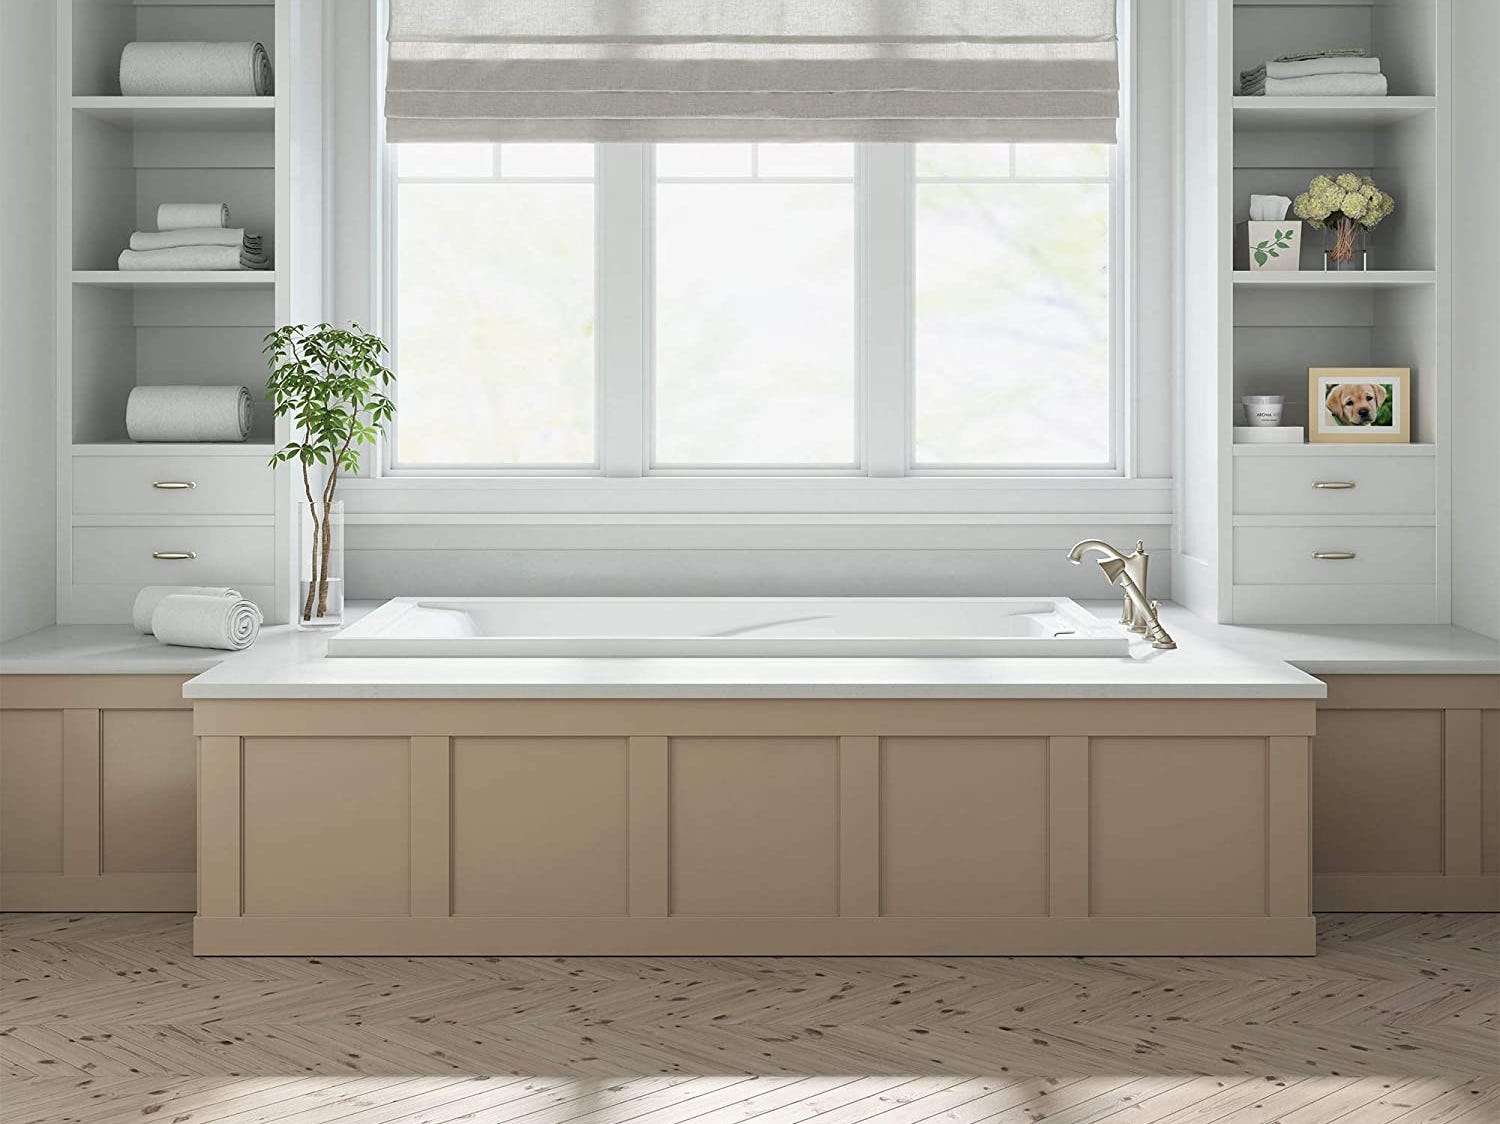 Drop-In-Badewanne nach amerikanischem Standard, eine der besten Drop-In-Badewannen im Jahr 2023, in einem Badezimmer vor einem Fenster